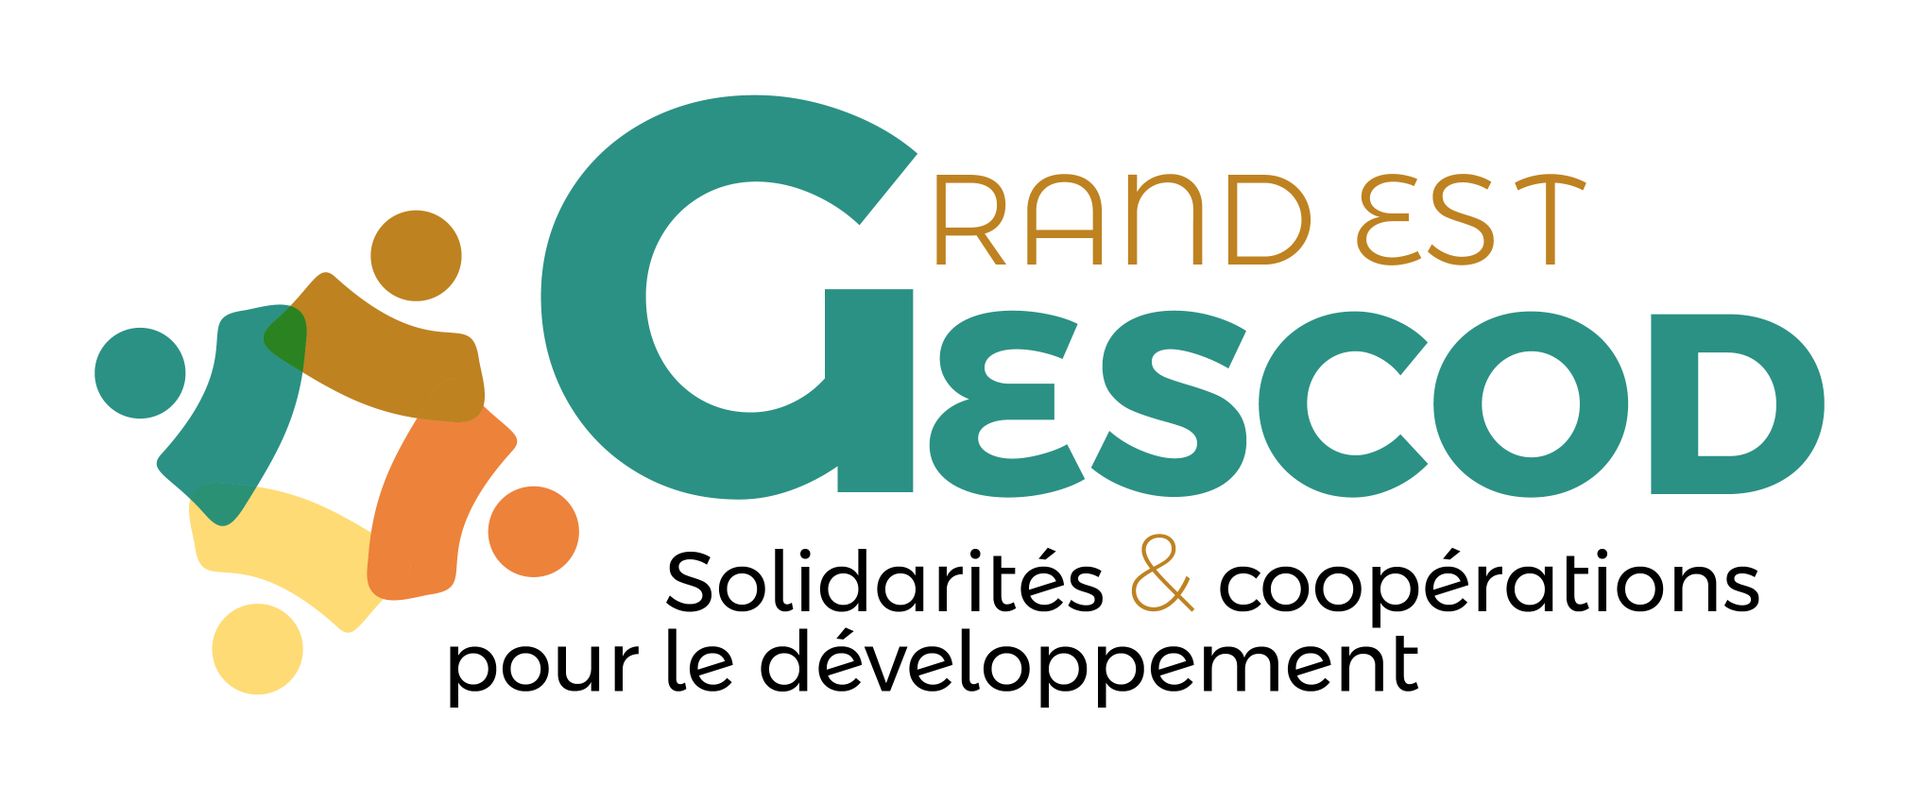 Gescod - Atelier Consommation et production responsable